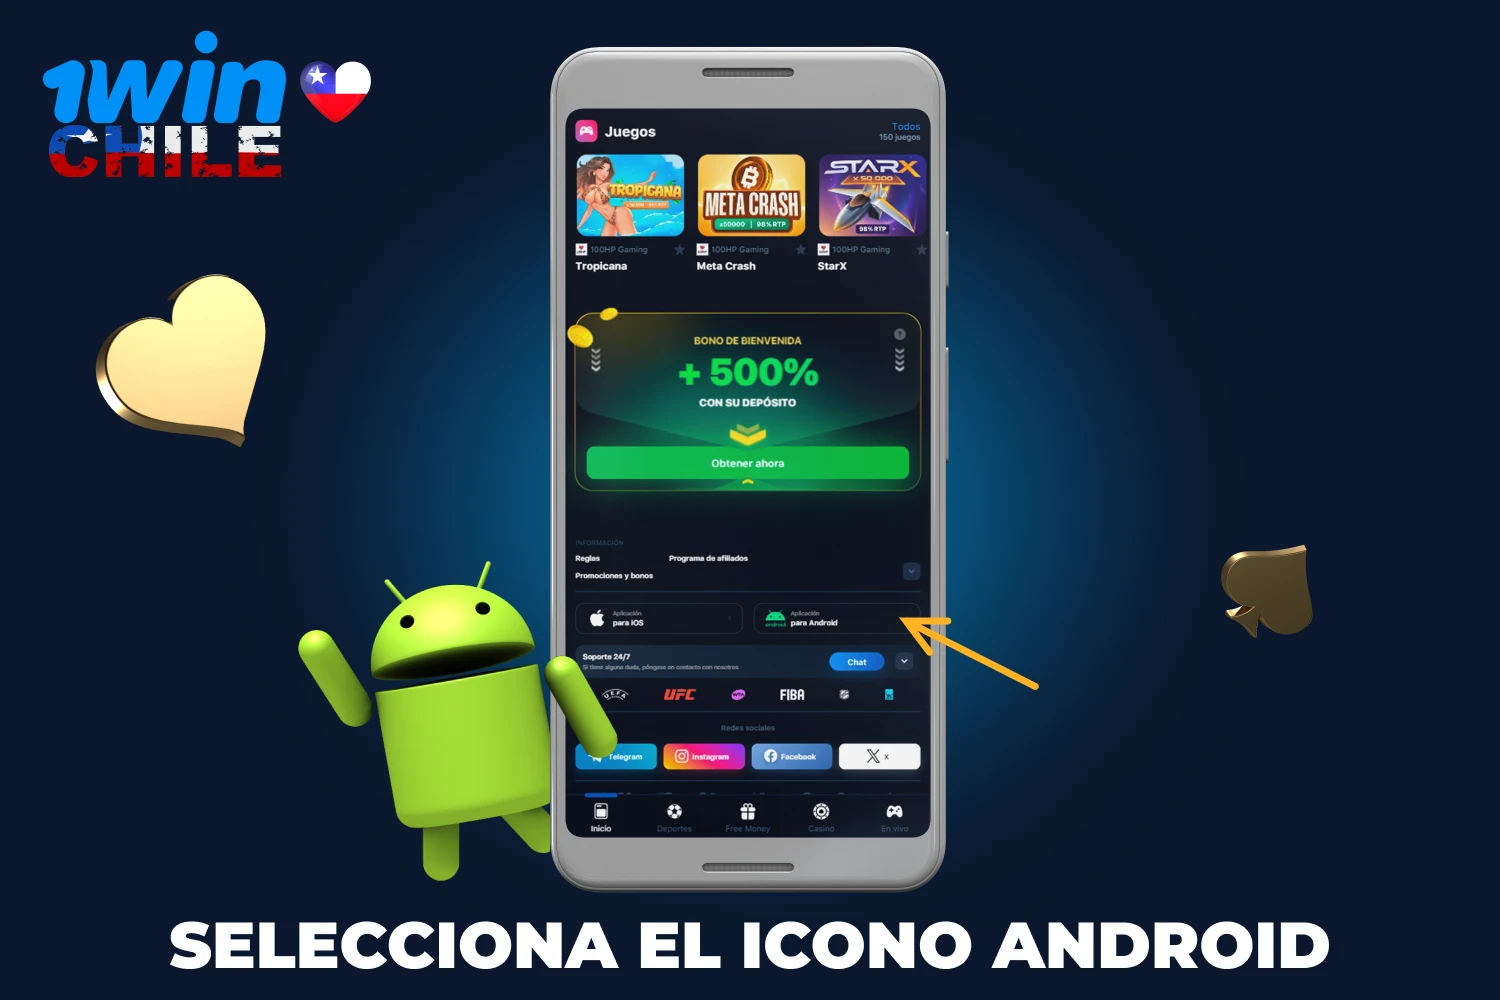 Para instalar la aplicación 1win, los usuarios chilenos deben hacer clic en el ícono Android